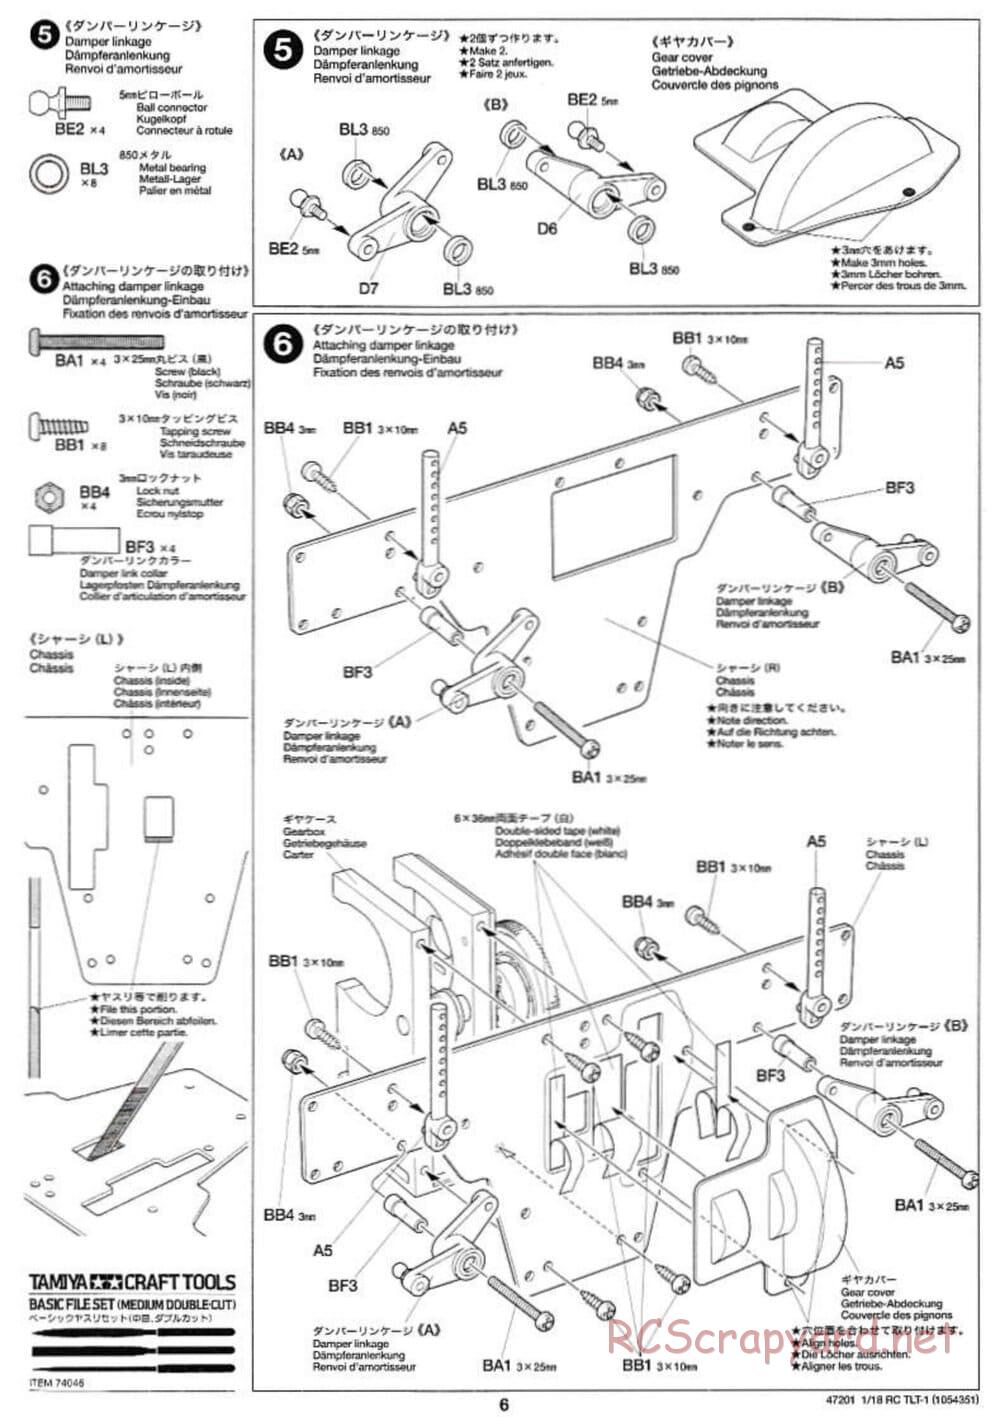 Tamiya - Rock Buster - TLT-1 Chassis - Manual - Page 6